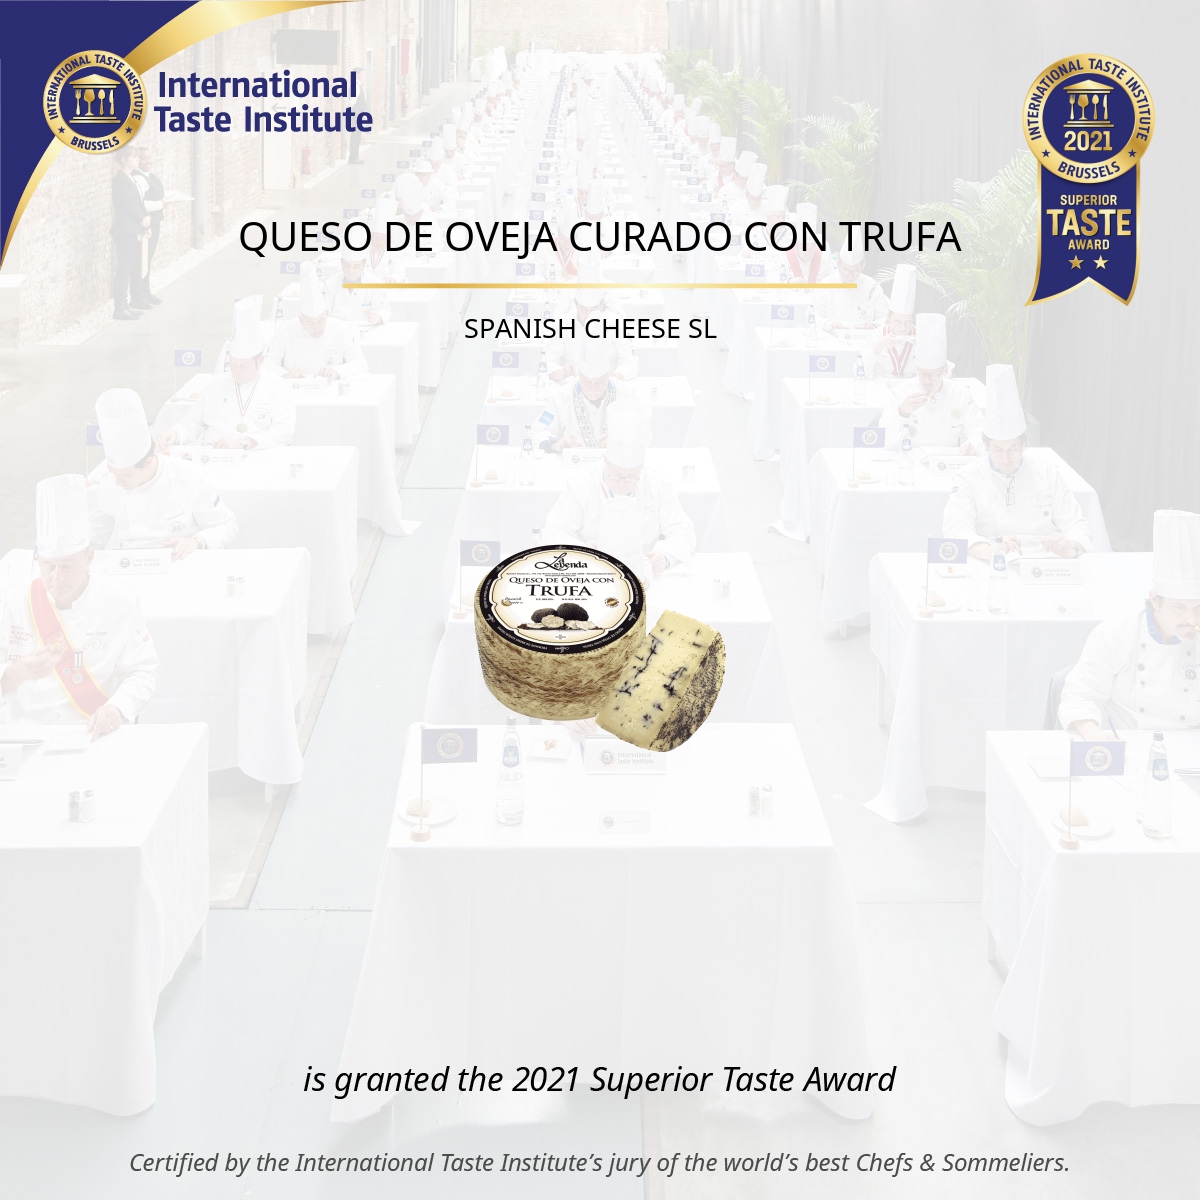 Square image of QUESO DE OVEJA CURADO CON TRUFA